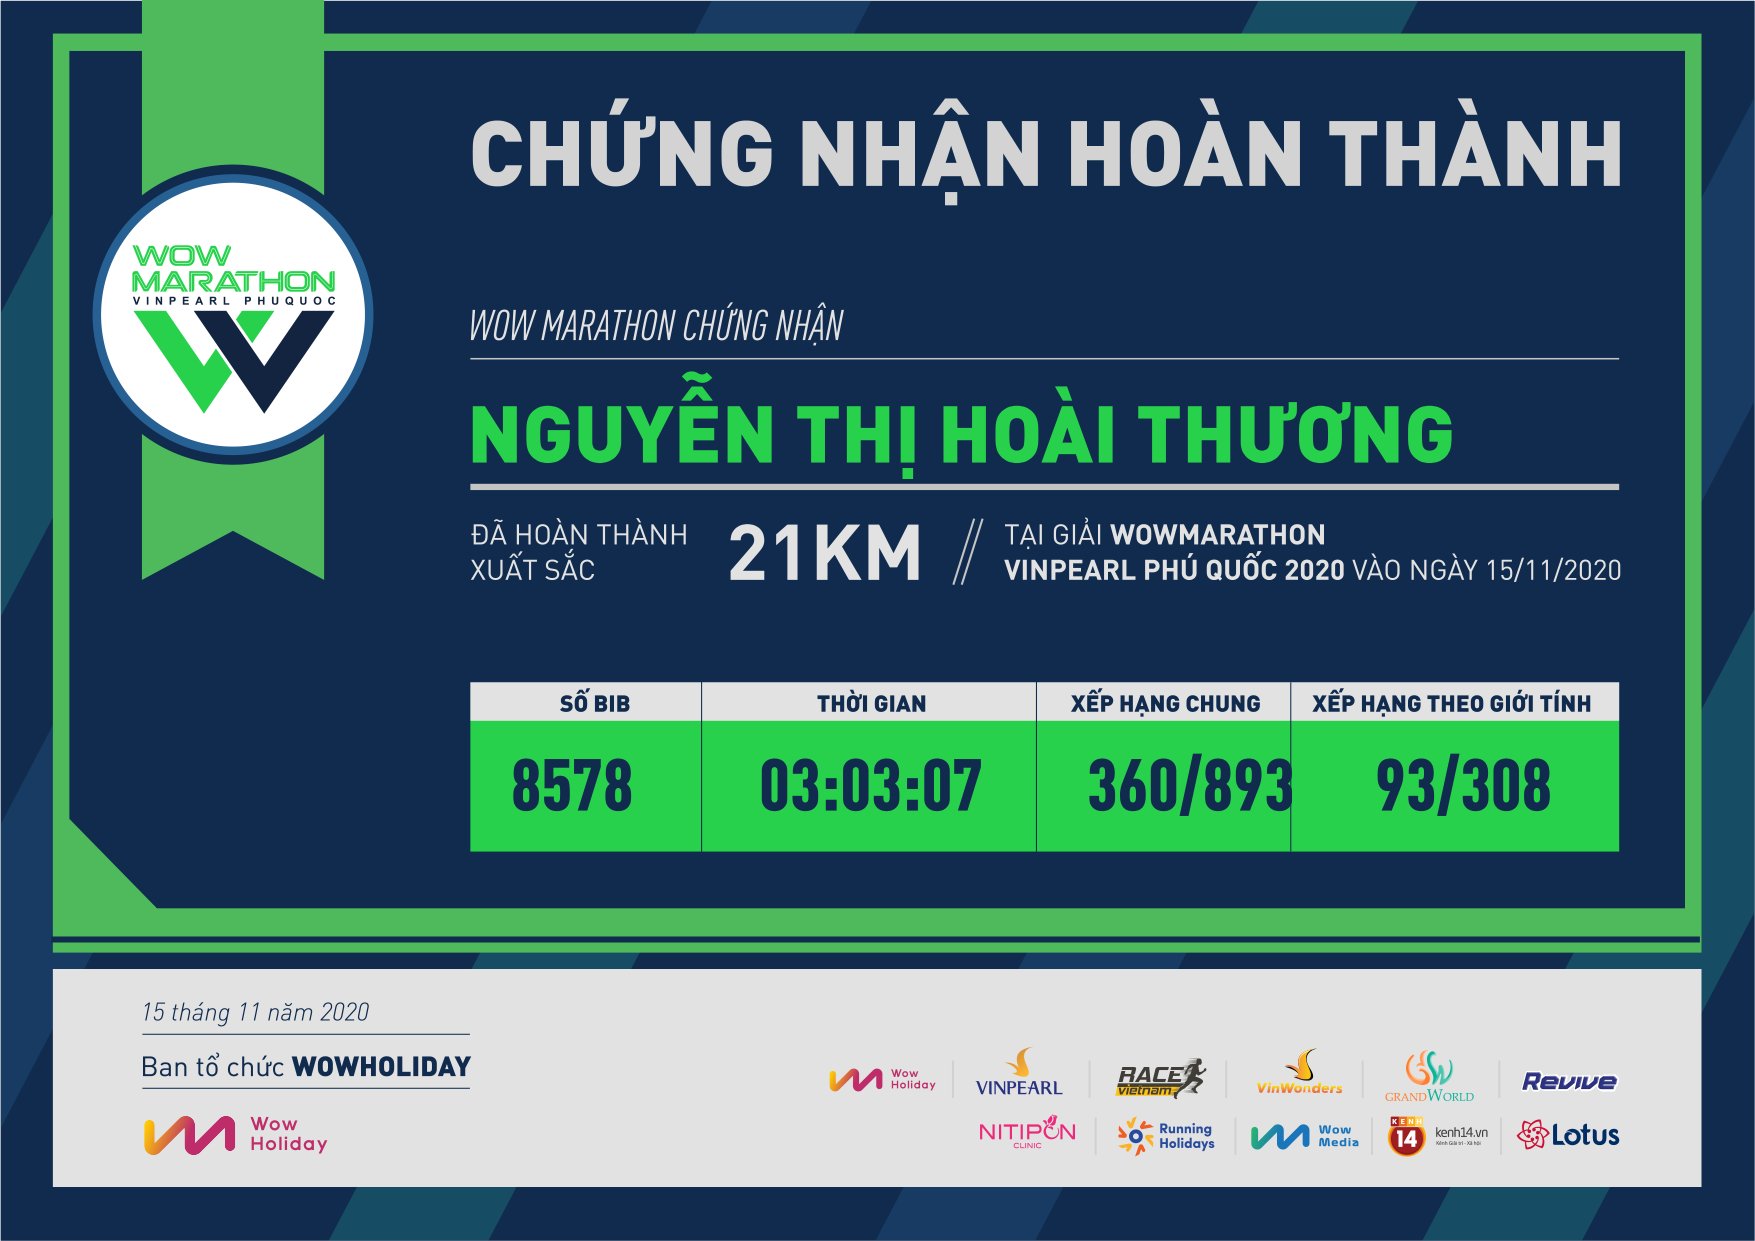 8578 - Nguyễn Thị Hoài Thương